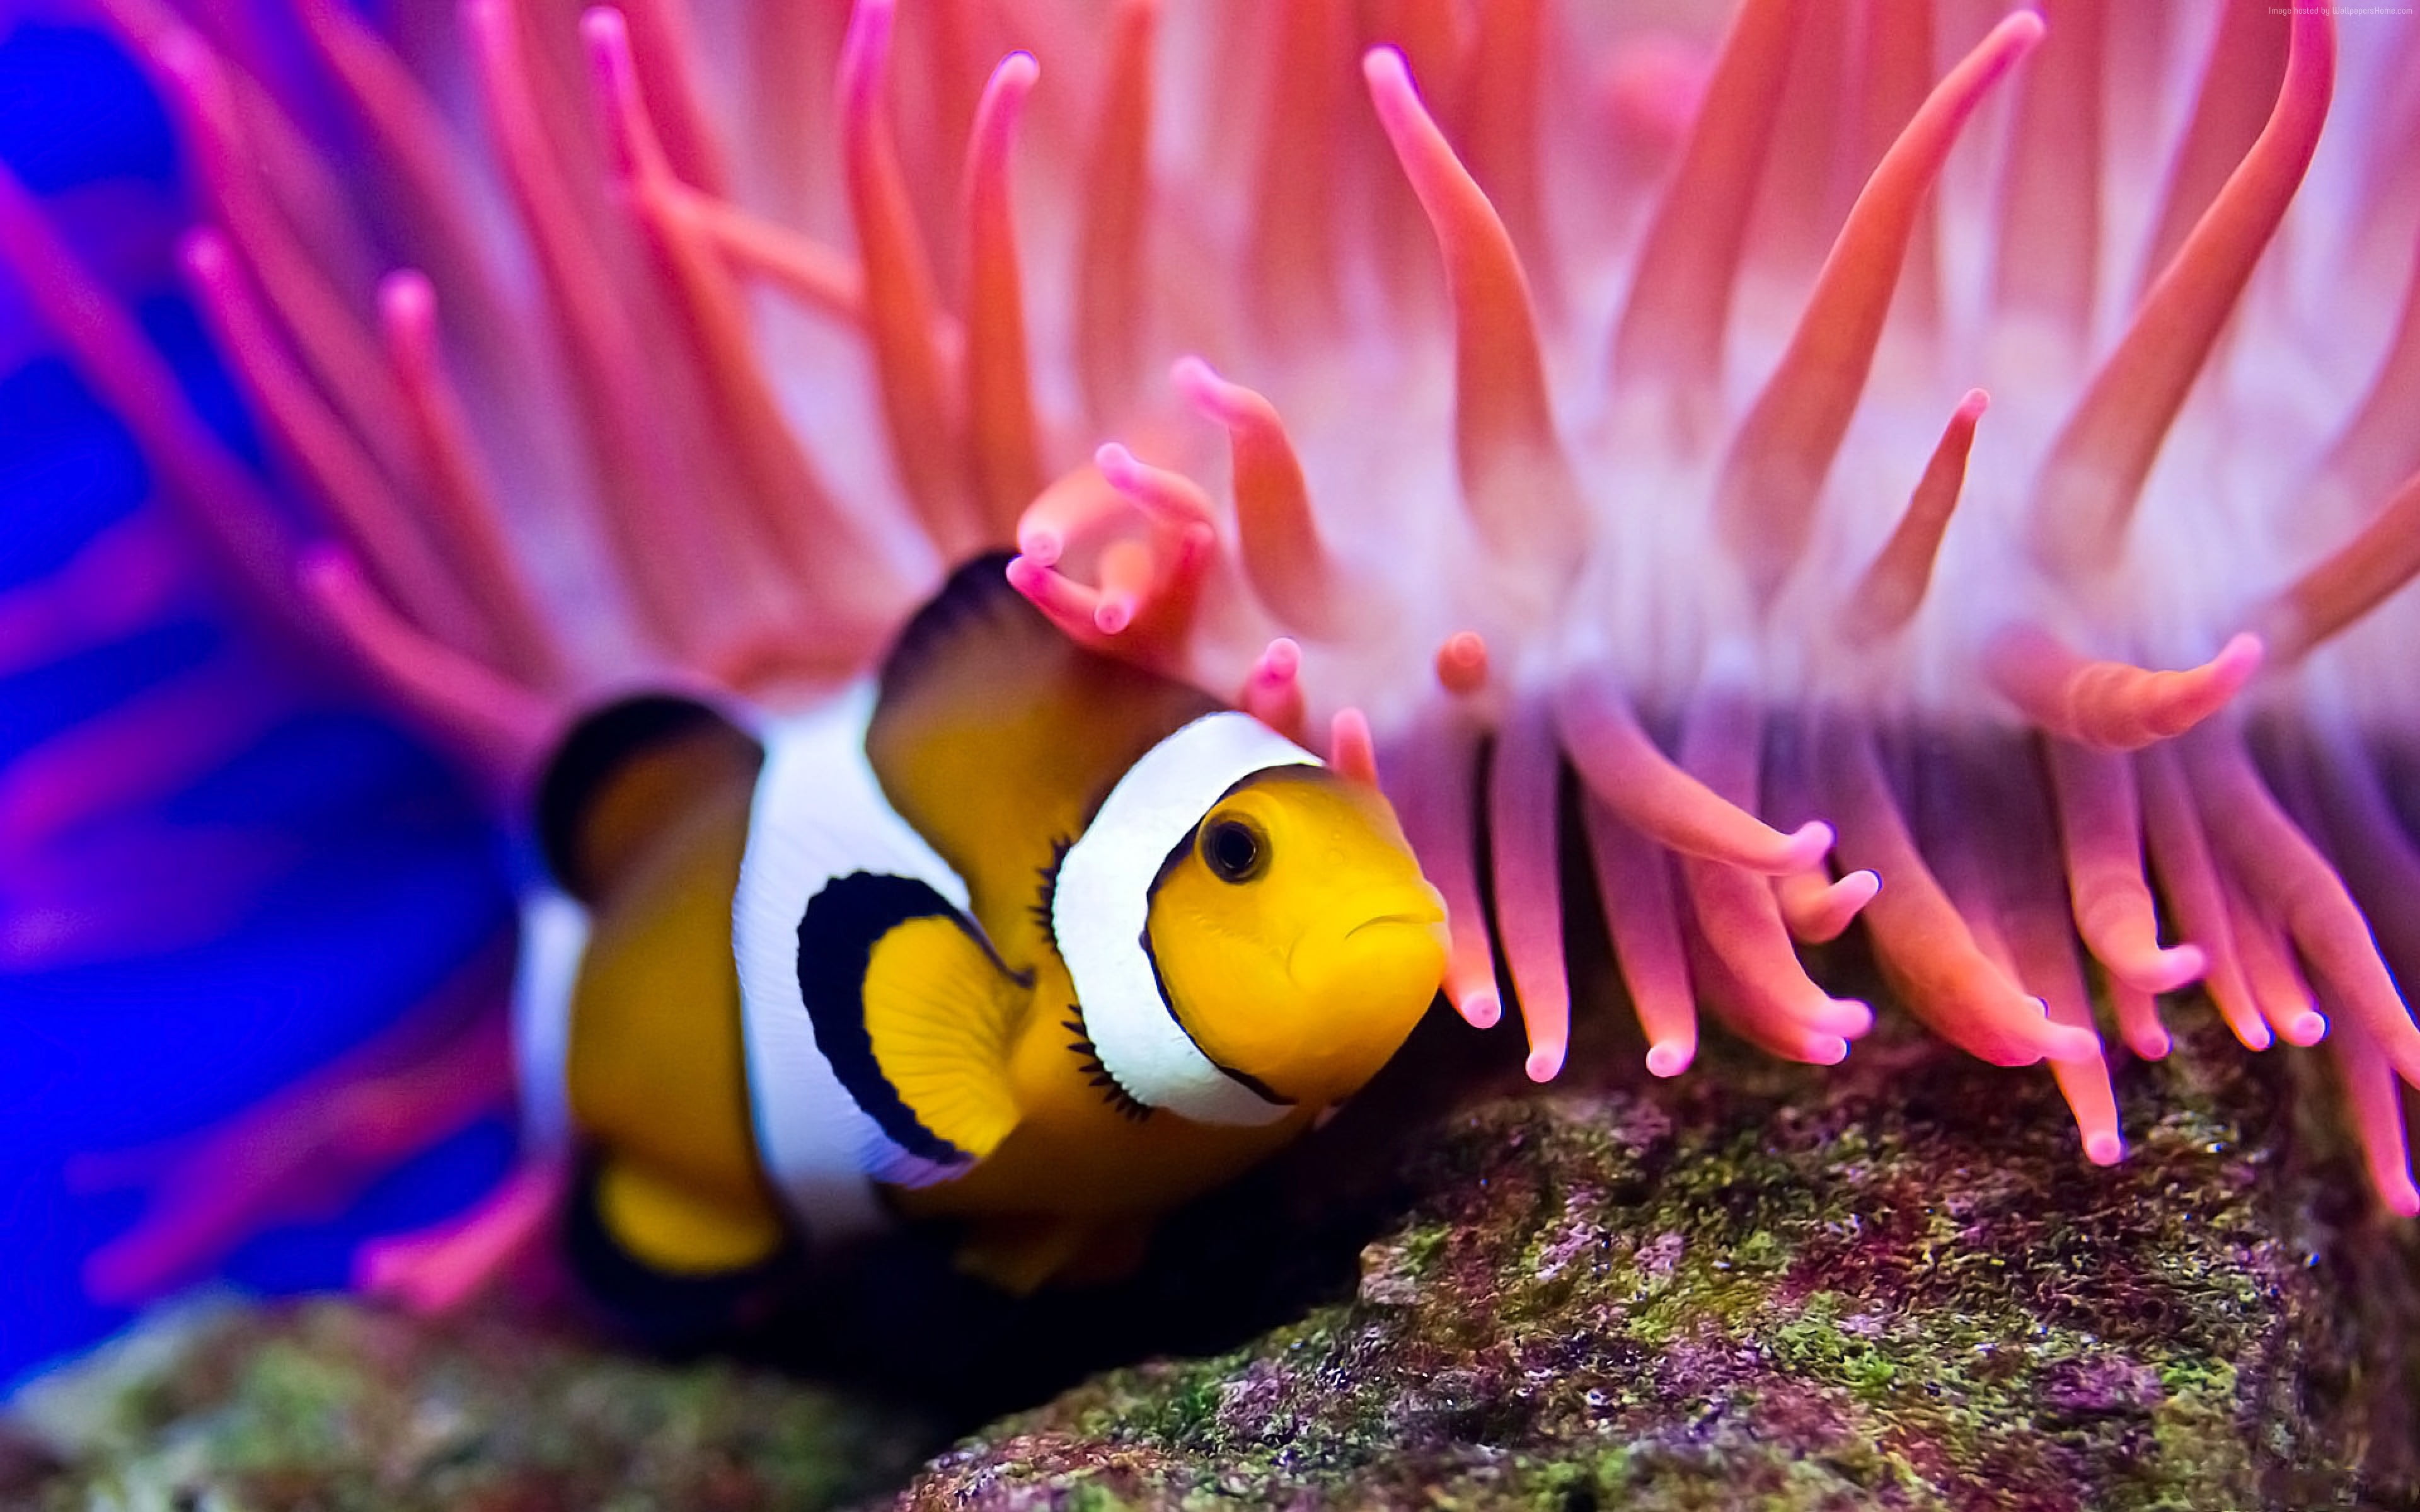 Животное клоун. Рыба клоун и актиния симбиоз. Рыбка клоун в актинии. Рыбы клоуны актинии океан. Рыба-клоун и морской анемон.